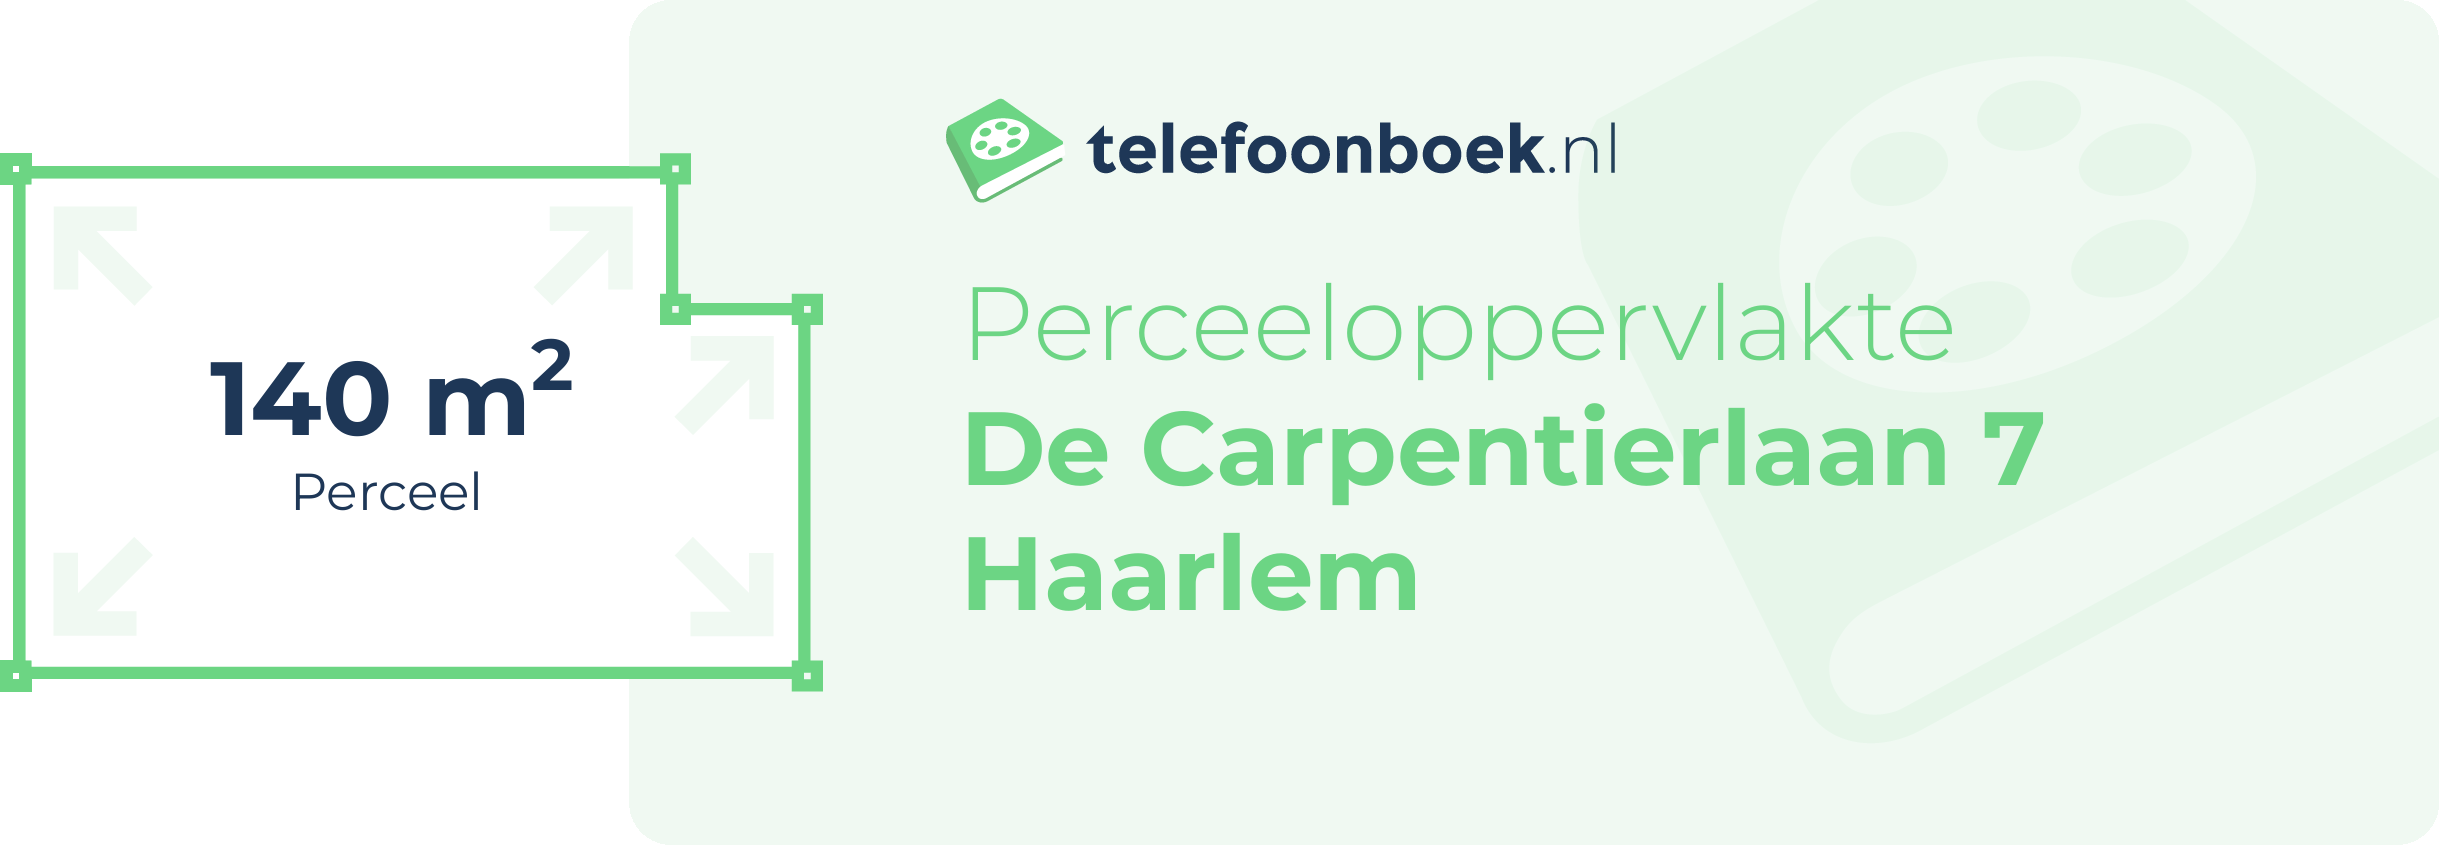 Perceeloppervlakte De Carpentierlaan 7 Haarlem